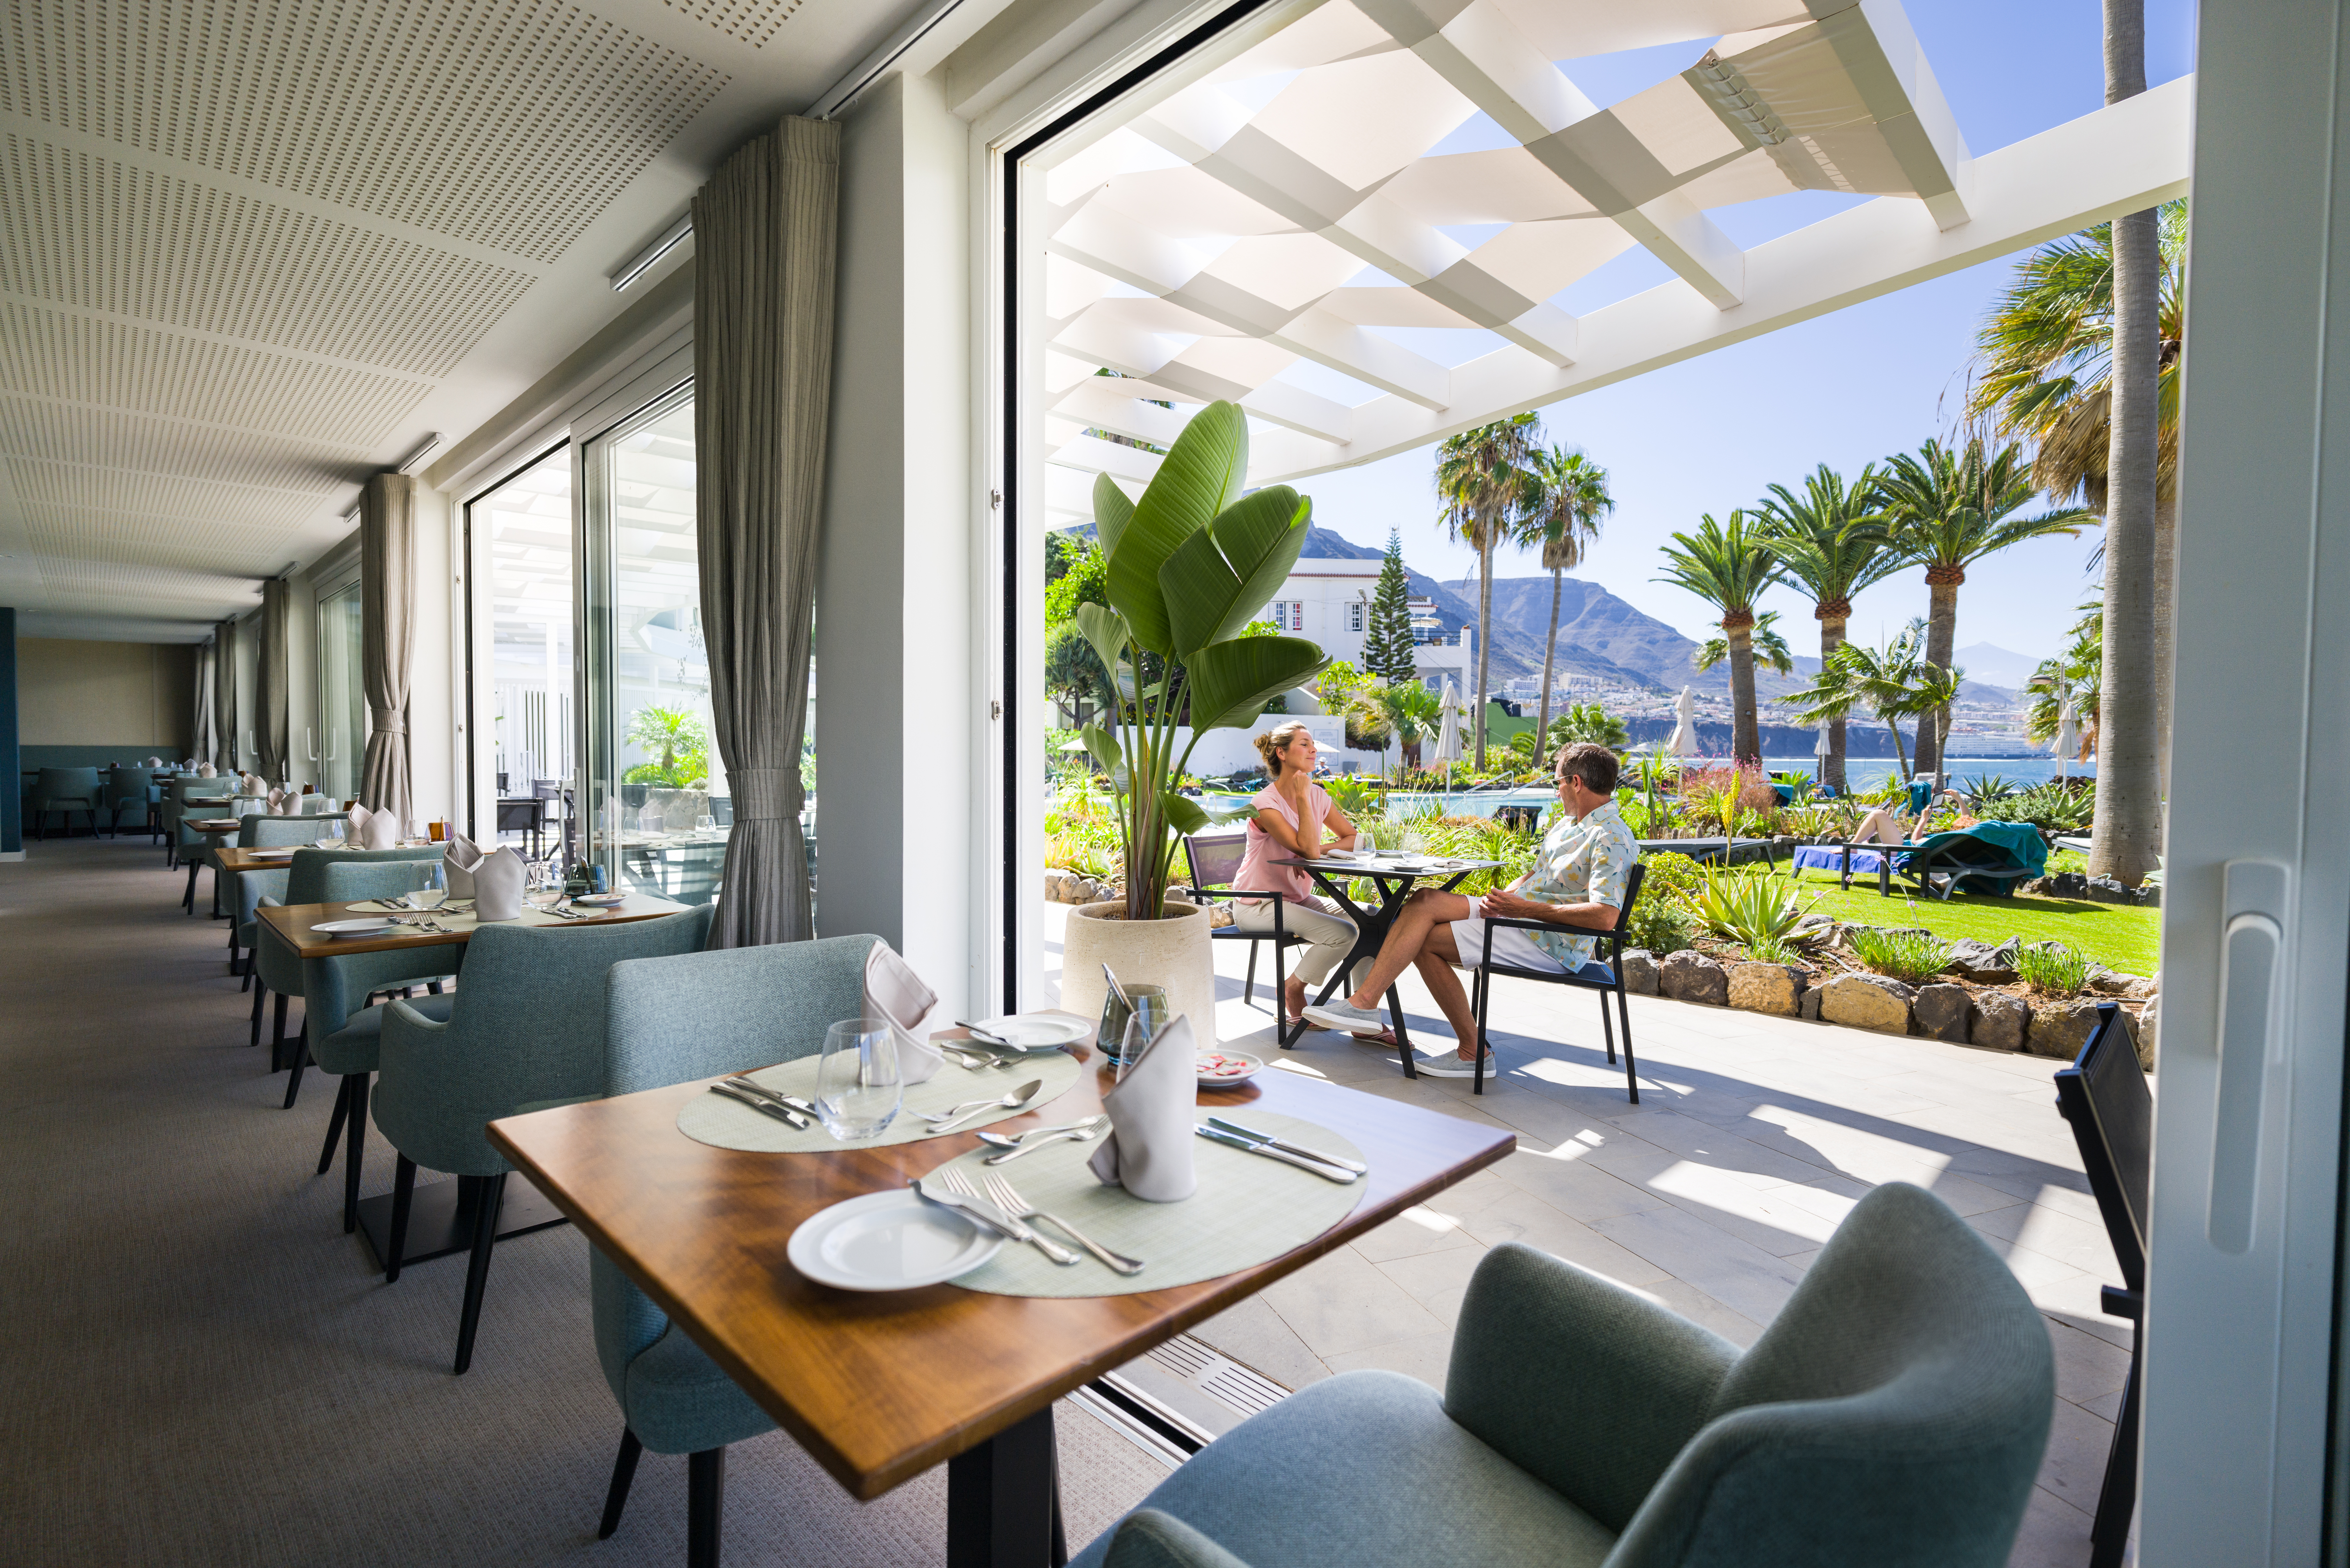 Gutschein im Wert von 1.000 Euro für das OCÉANO Health Spa Hotel, Teneriffa